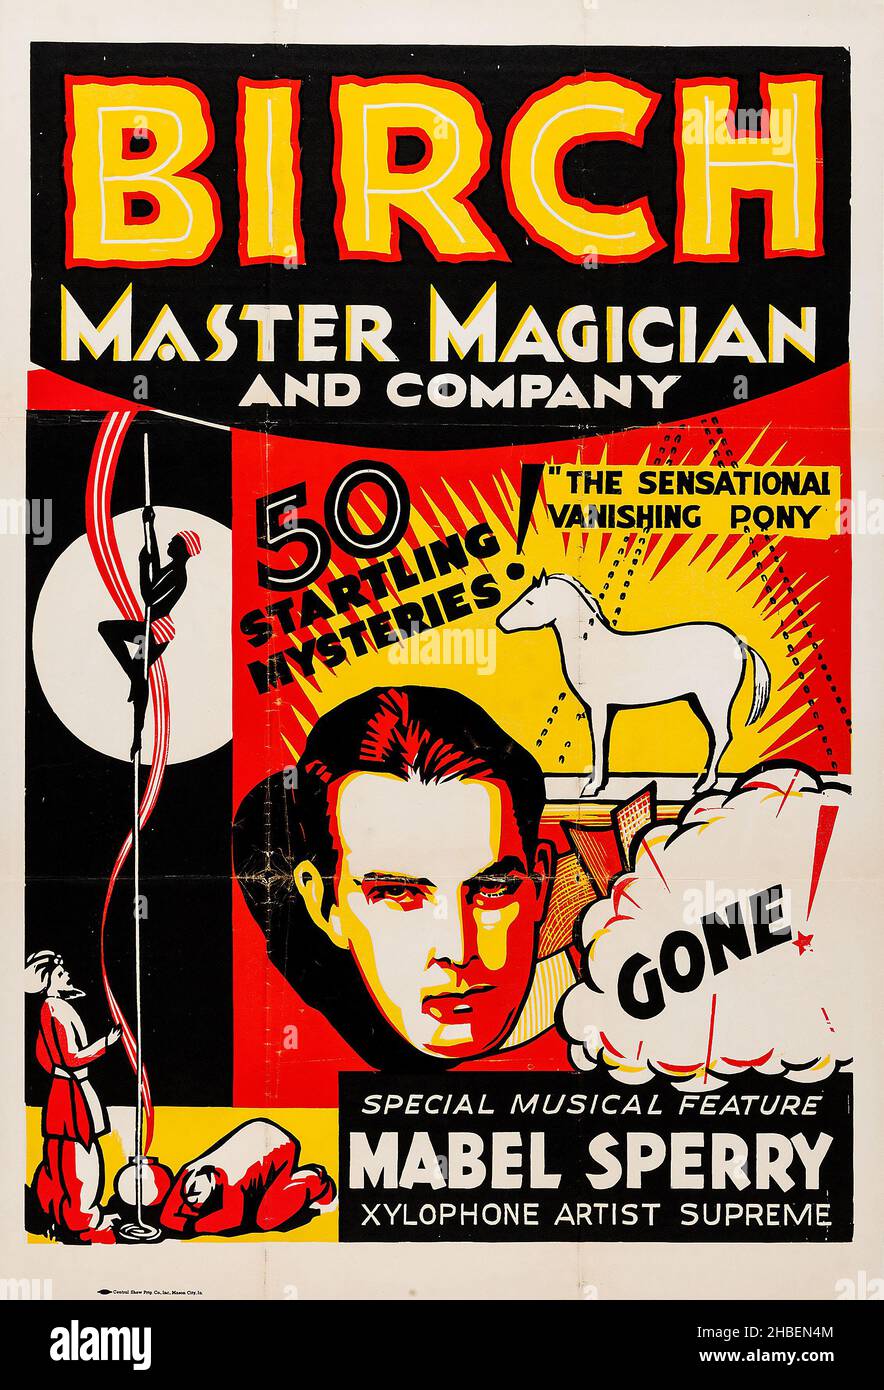 MacDonald Birch Magic Poster (Central Show Printing Co., 1930s).Poster - Maître Magicien et Compagnie - 50 mystères surprenants!Poney de fuite. Banque D'Images